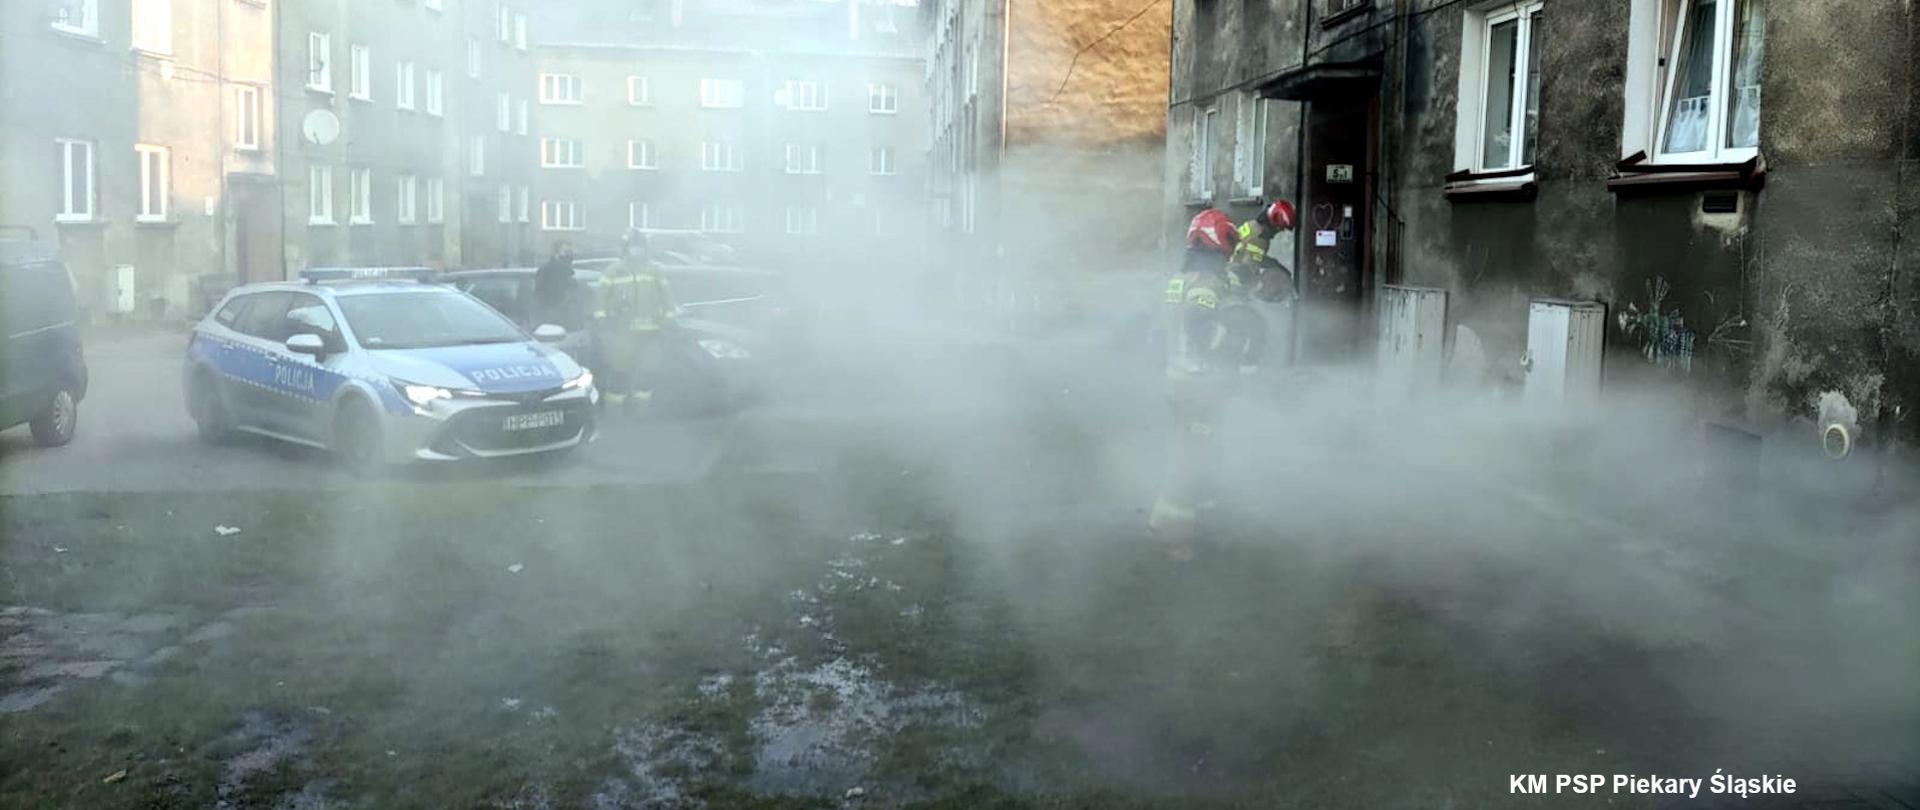 Zdjęcie przedstawia zadymiona przestrzeń przed budynkiem w którym doszło do pożaru. Na zdjęciu widoczni są również strażacy oraz radiowóz policji.